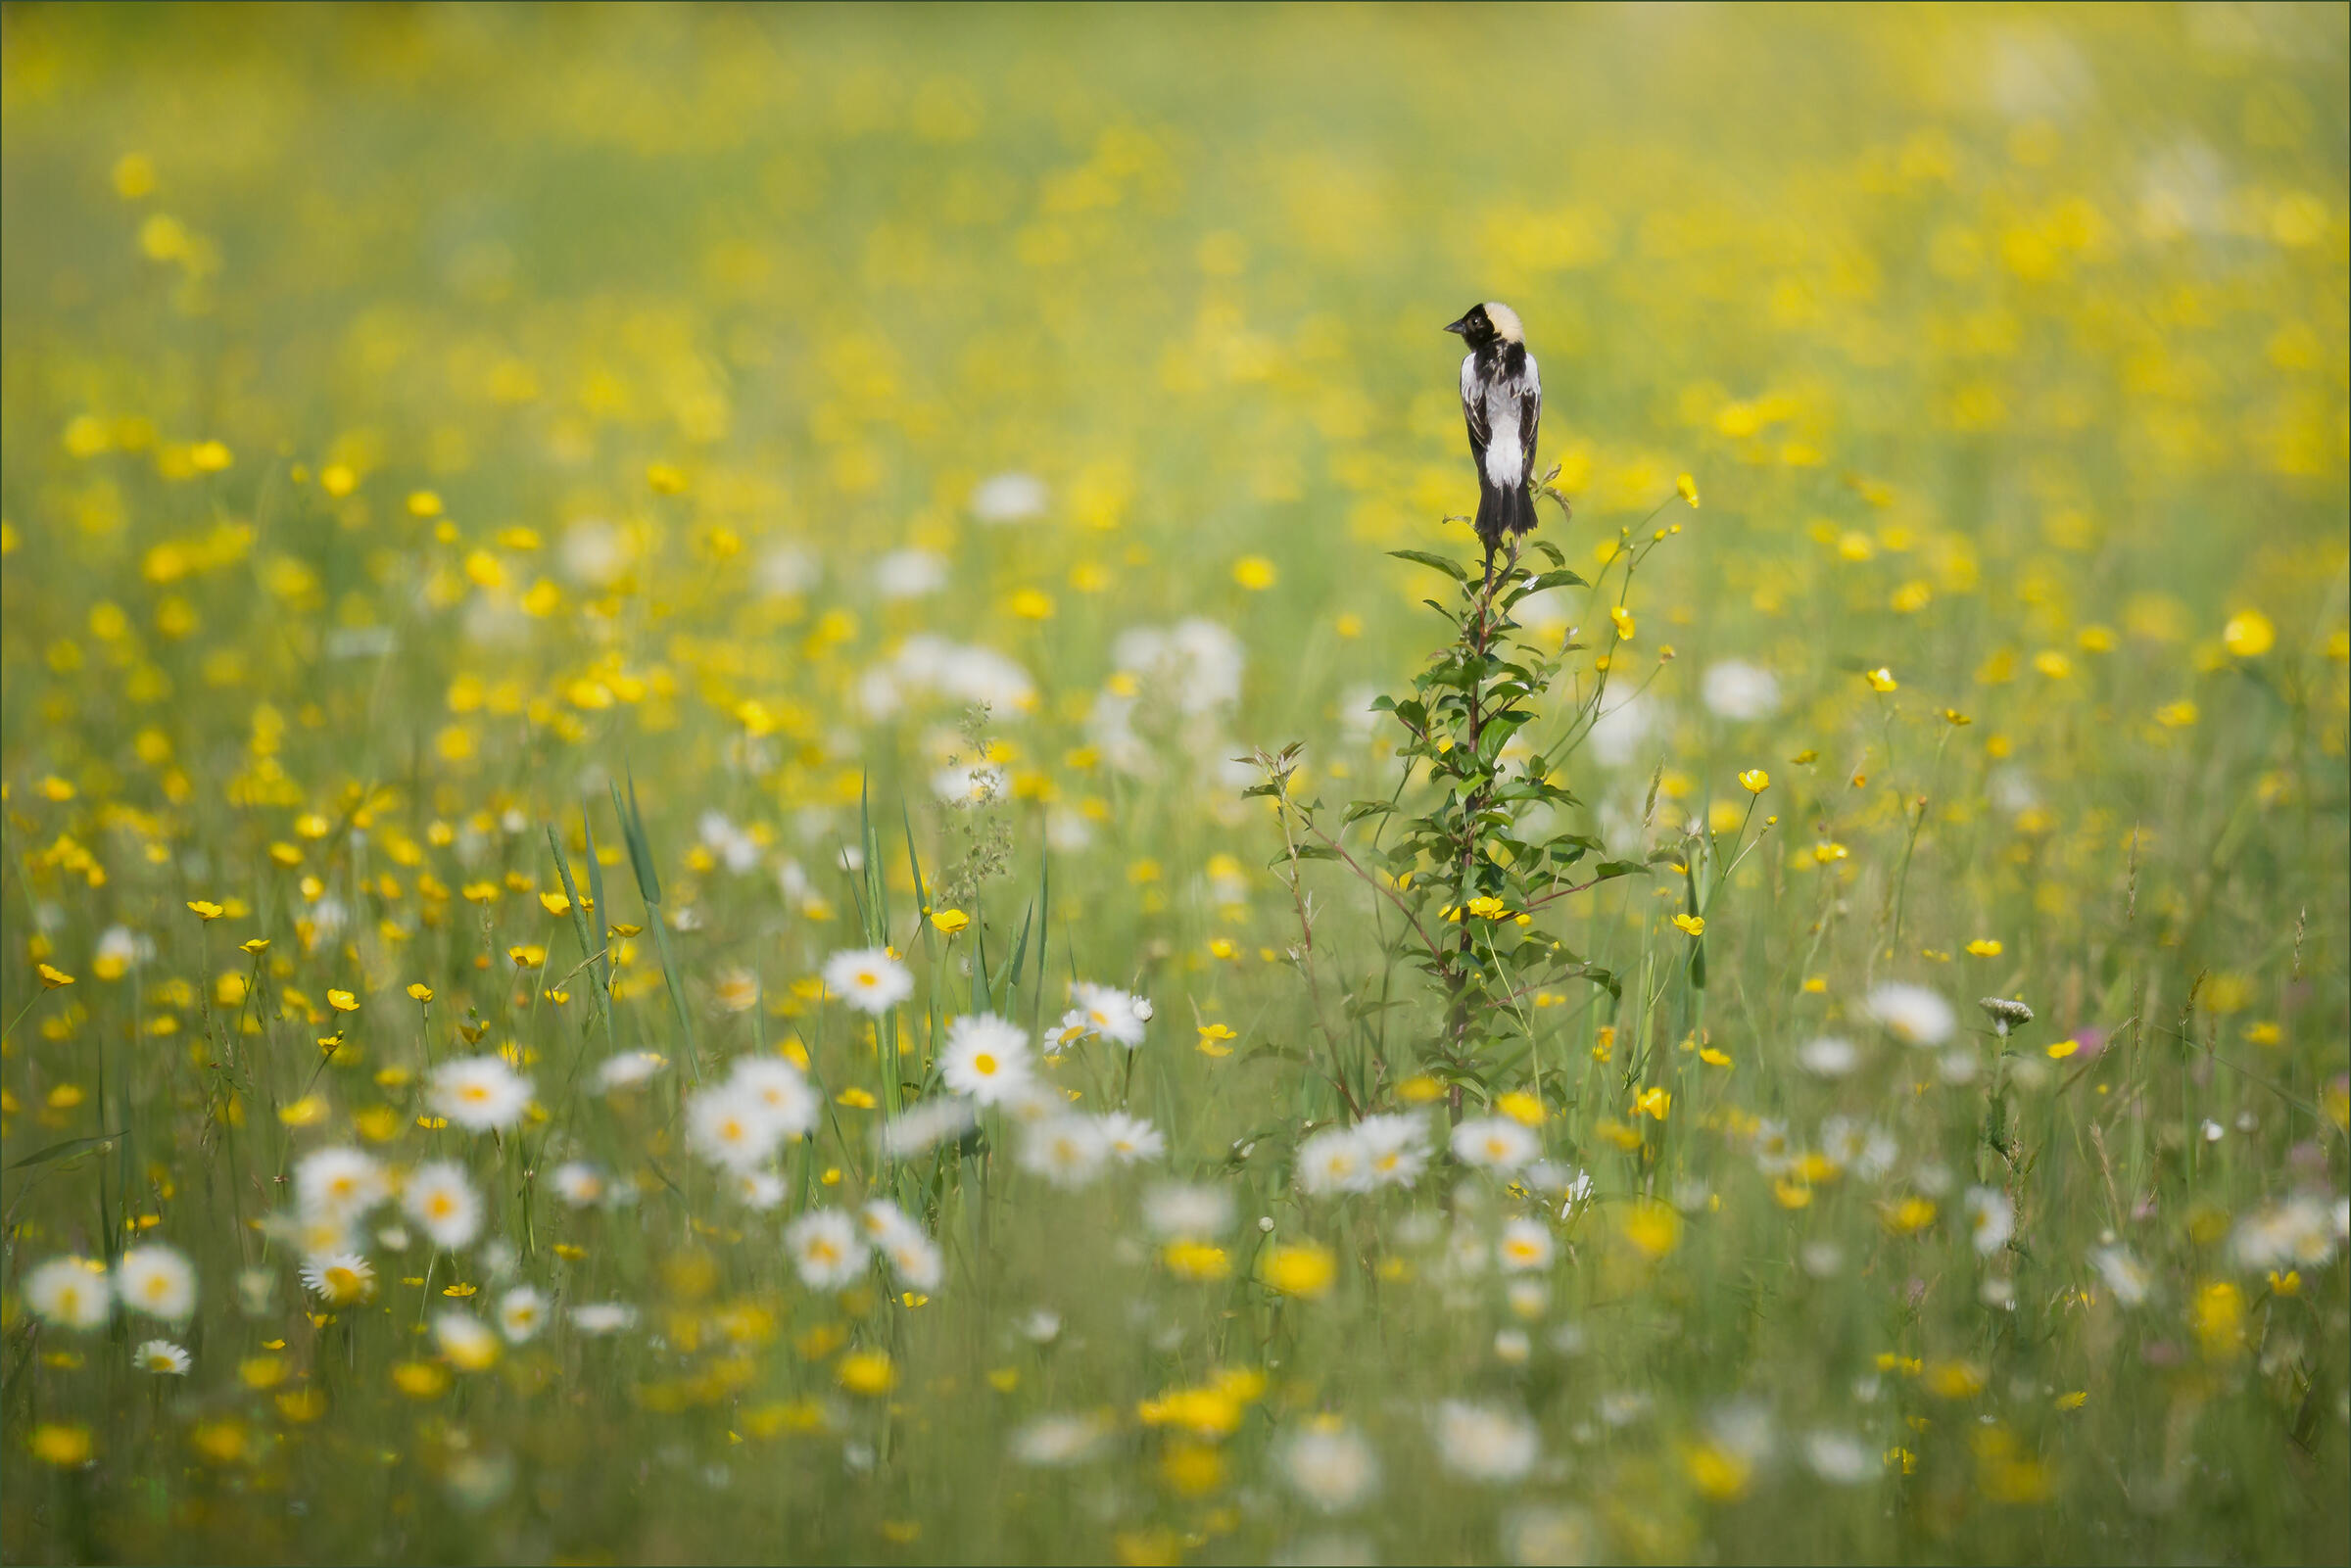 Male Bobolink in a flowery field.